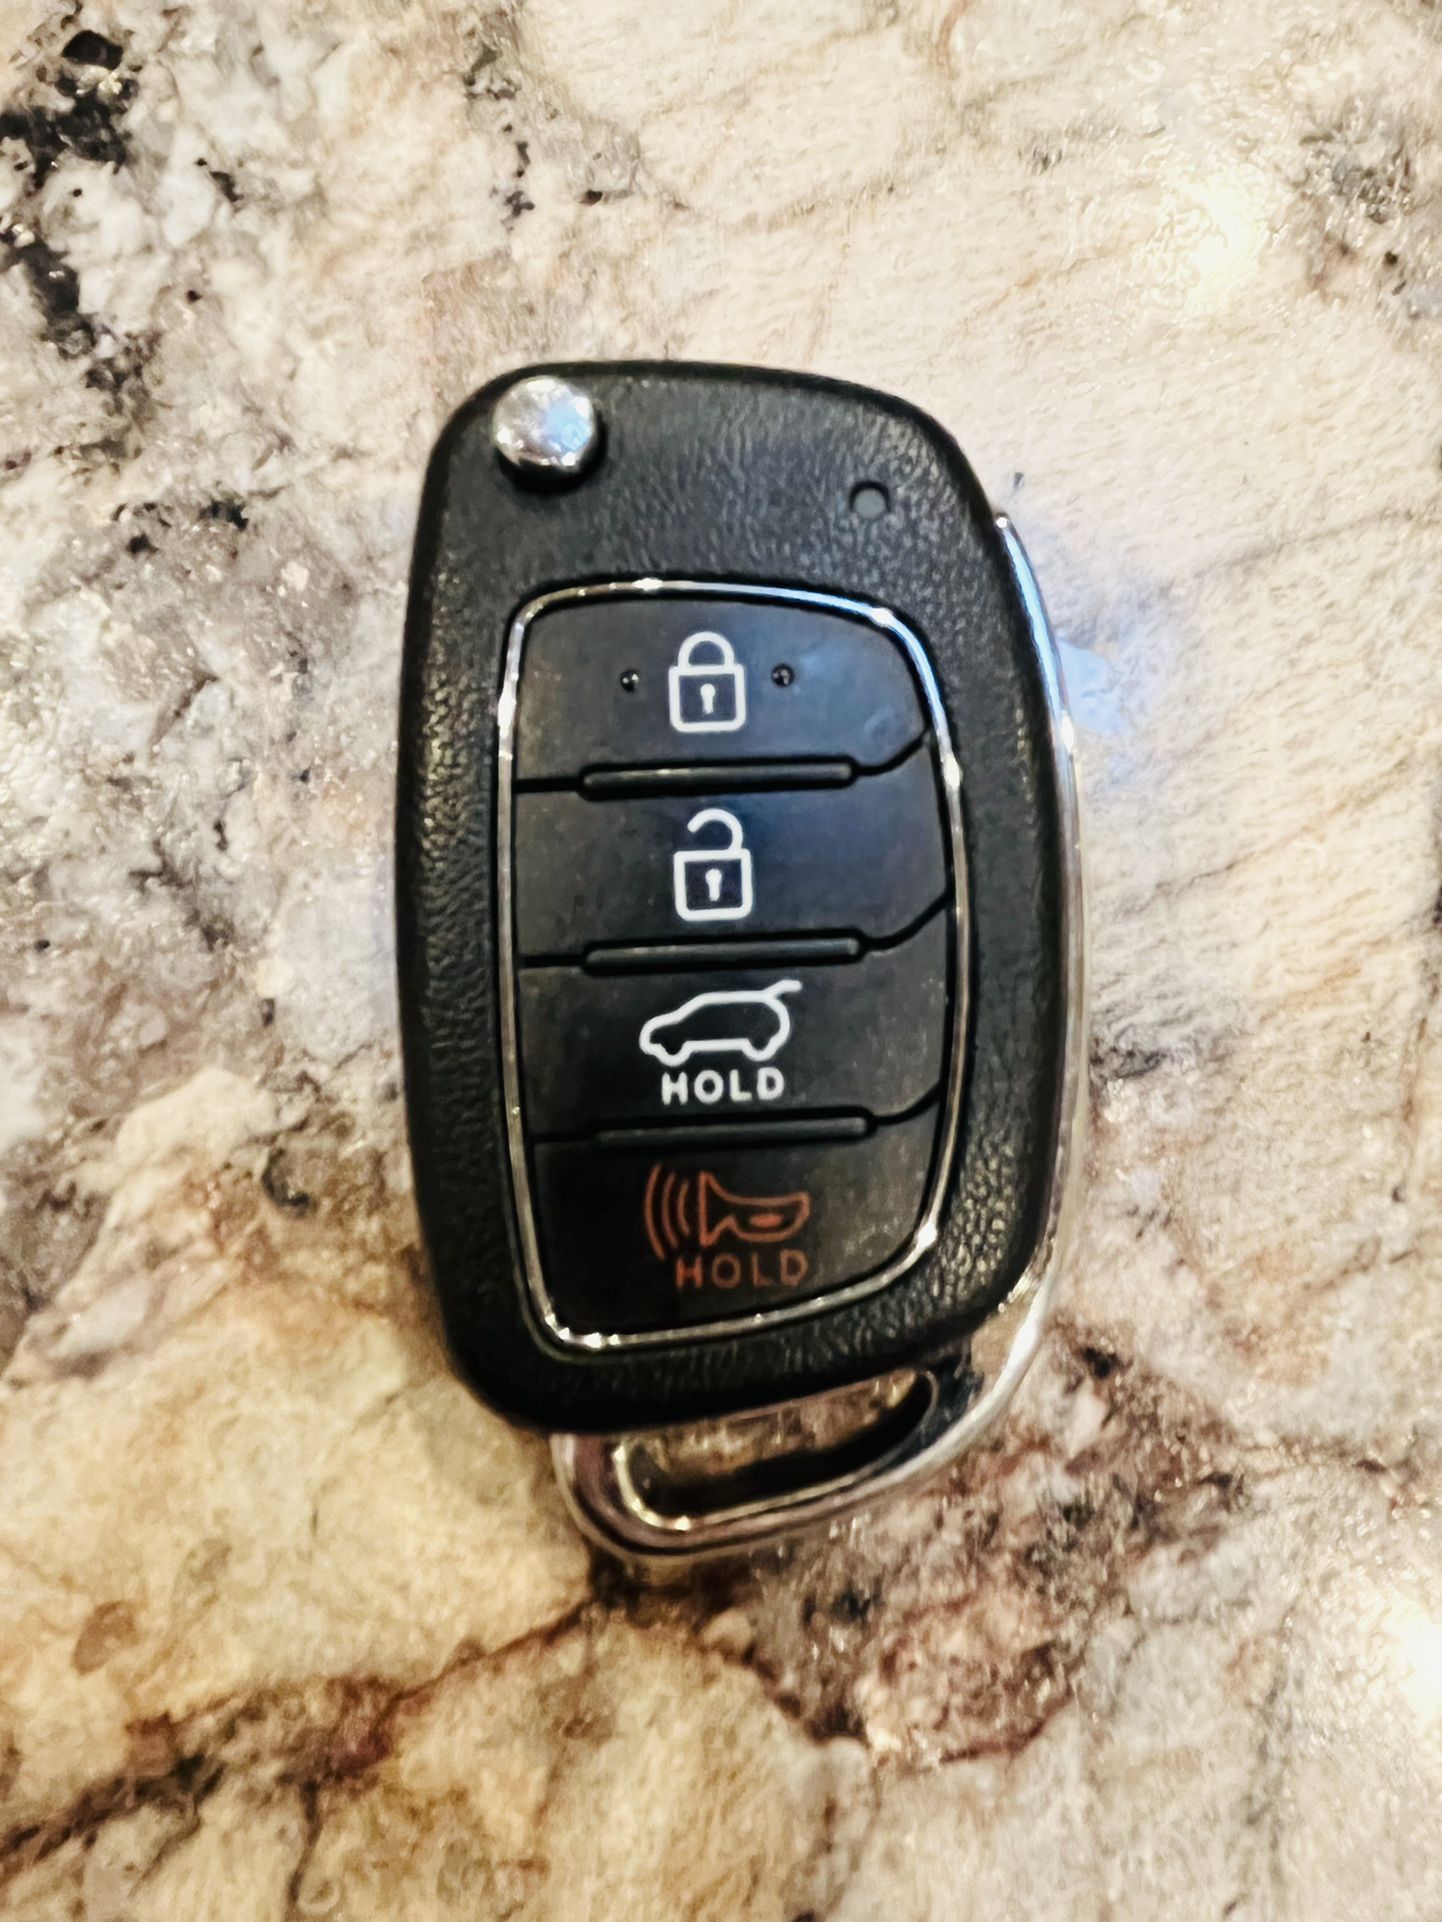 Hyundai Key 